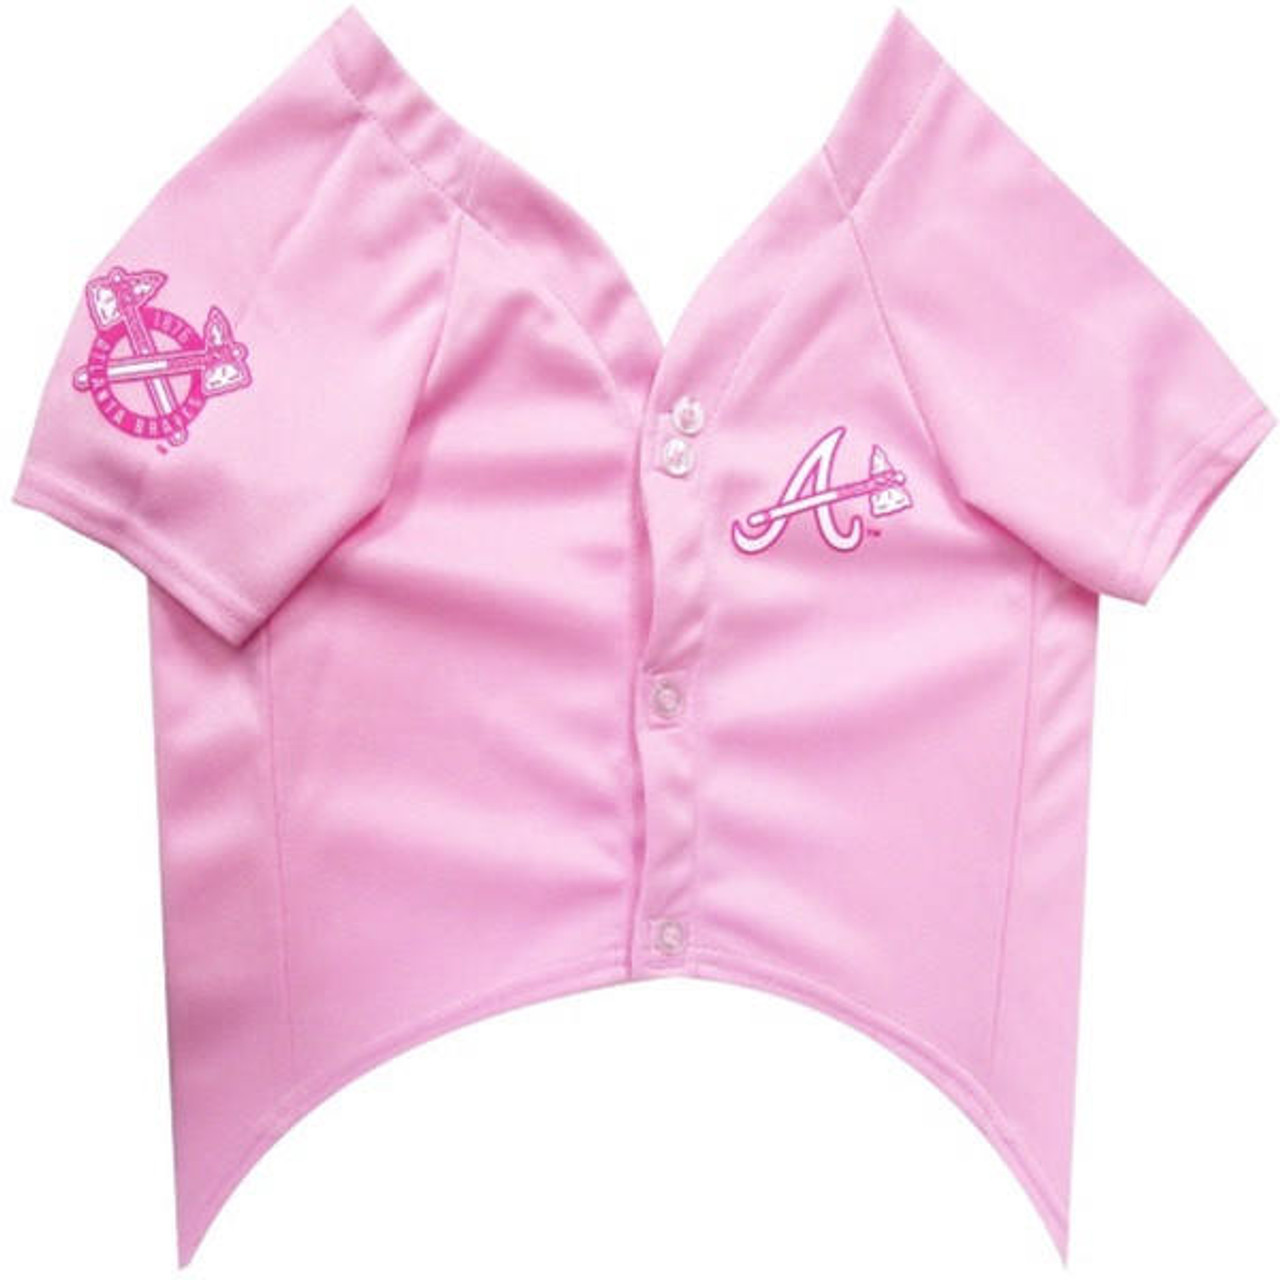 Atlanta Braves Pink Pet Jersey